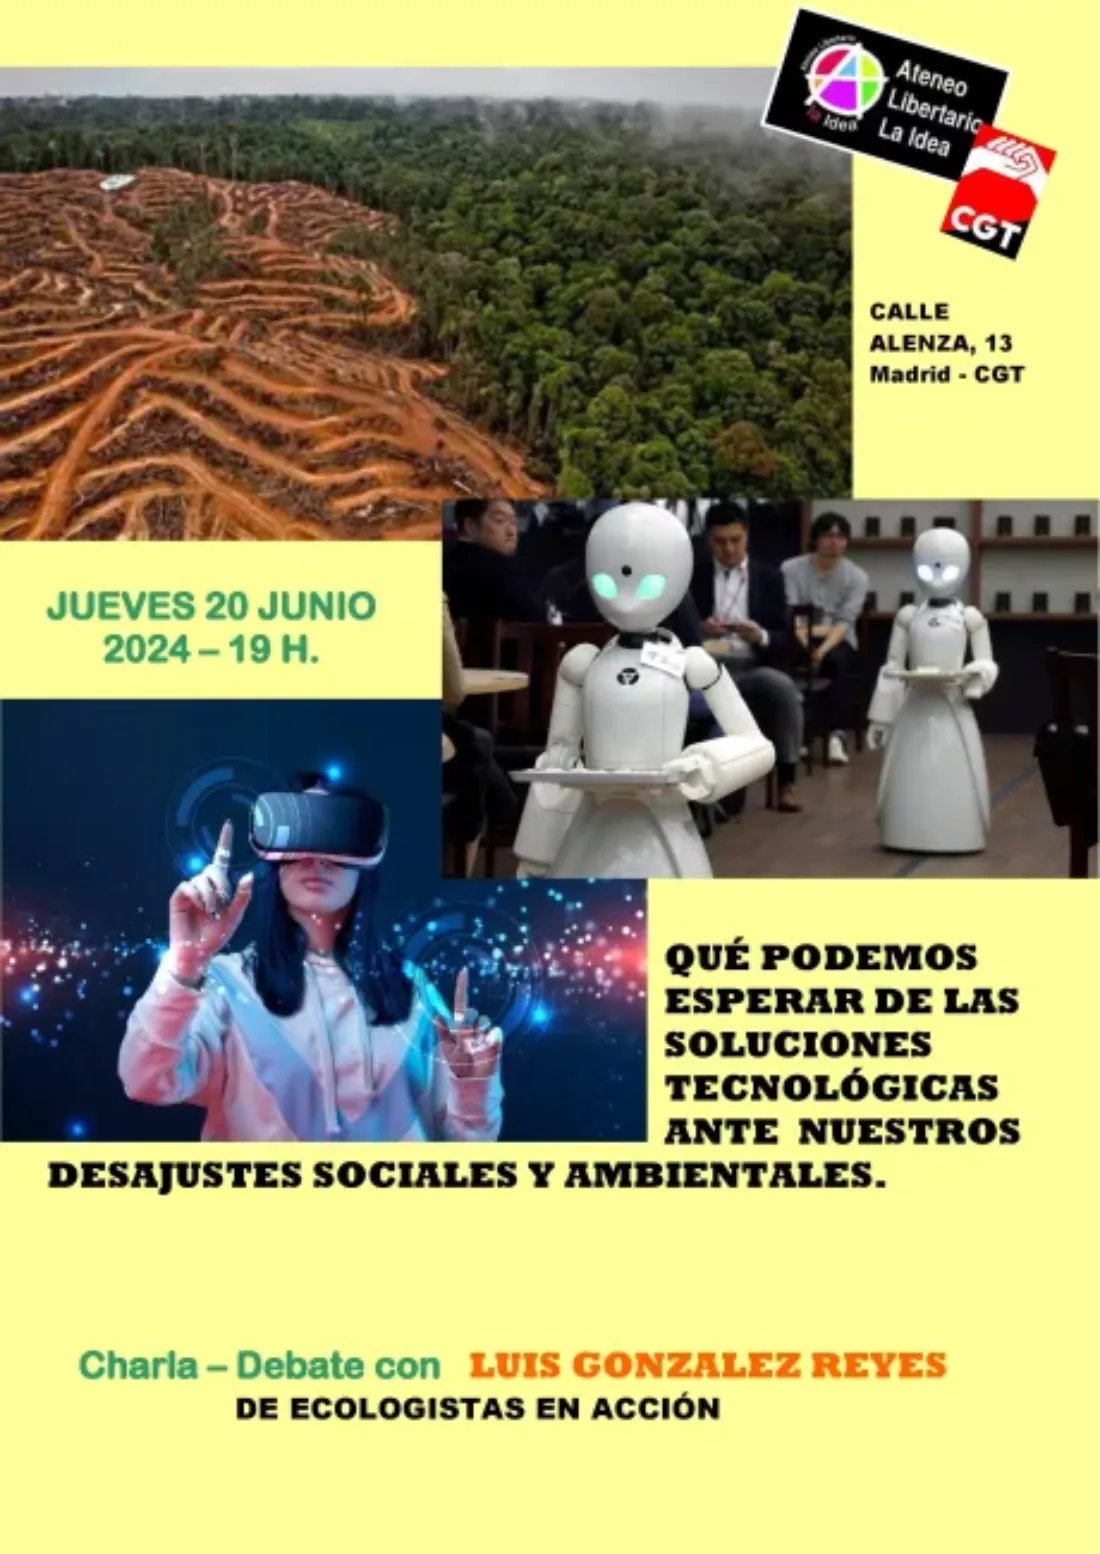 Charla/debate: «Qué podemos esperar de las soluciones tecnológicas ante nuestros desajustes sociales y ambientales» con Luis González Reyes (Ecologistas en Acción)